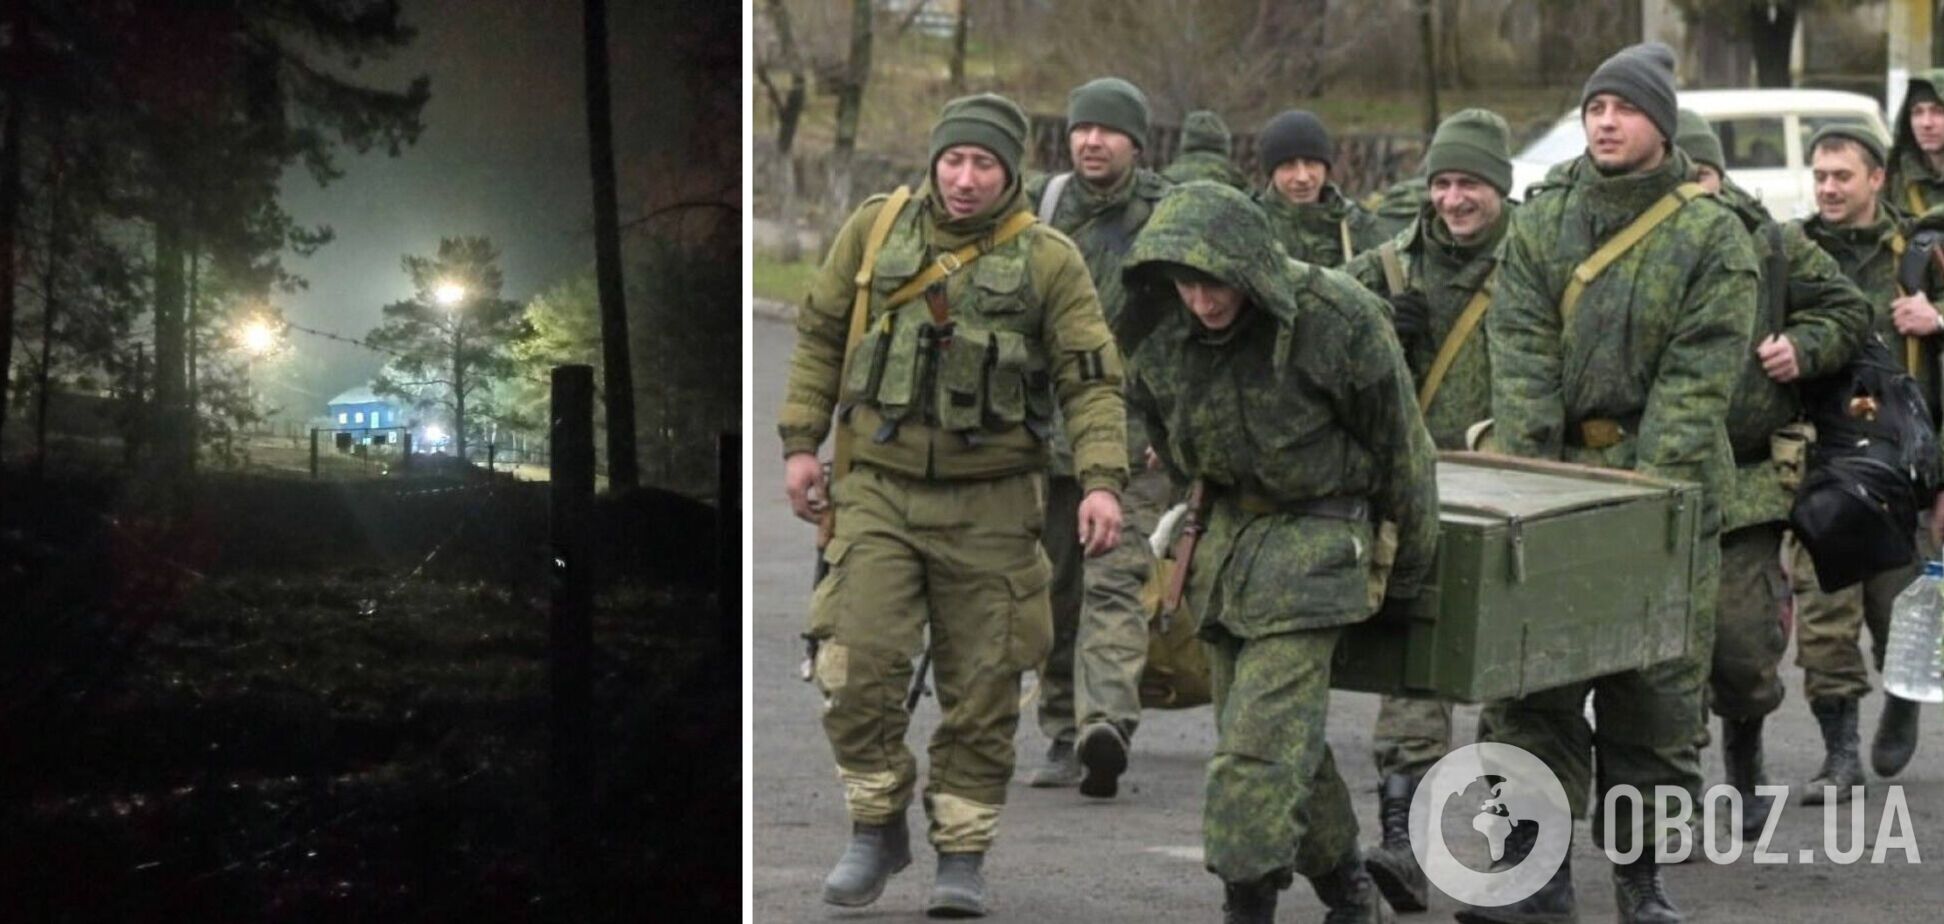 Агенты 'Атеш' провели разведку на базе оккупантов в Тольятти, где хранятся боеприпасы. Фото